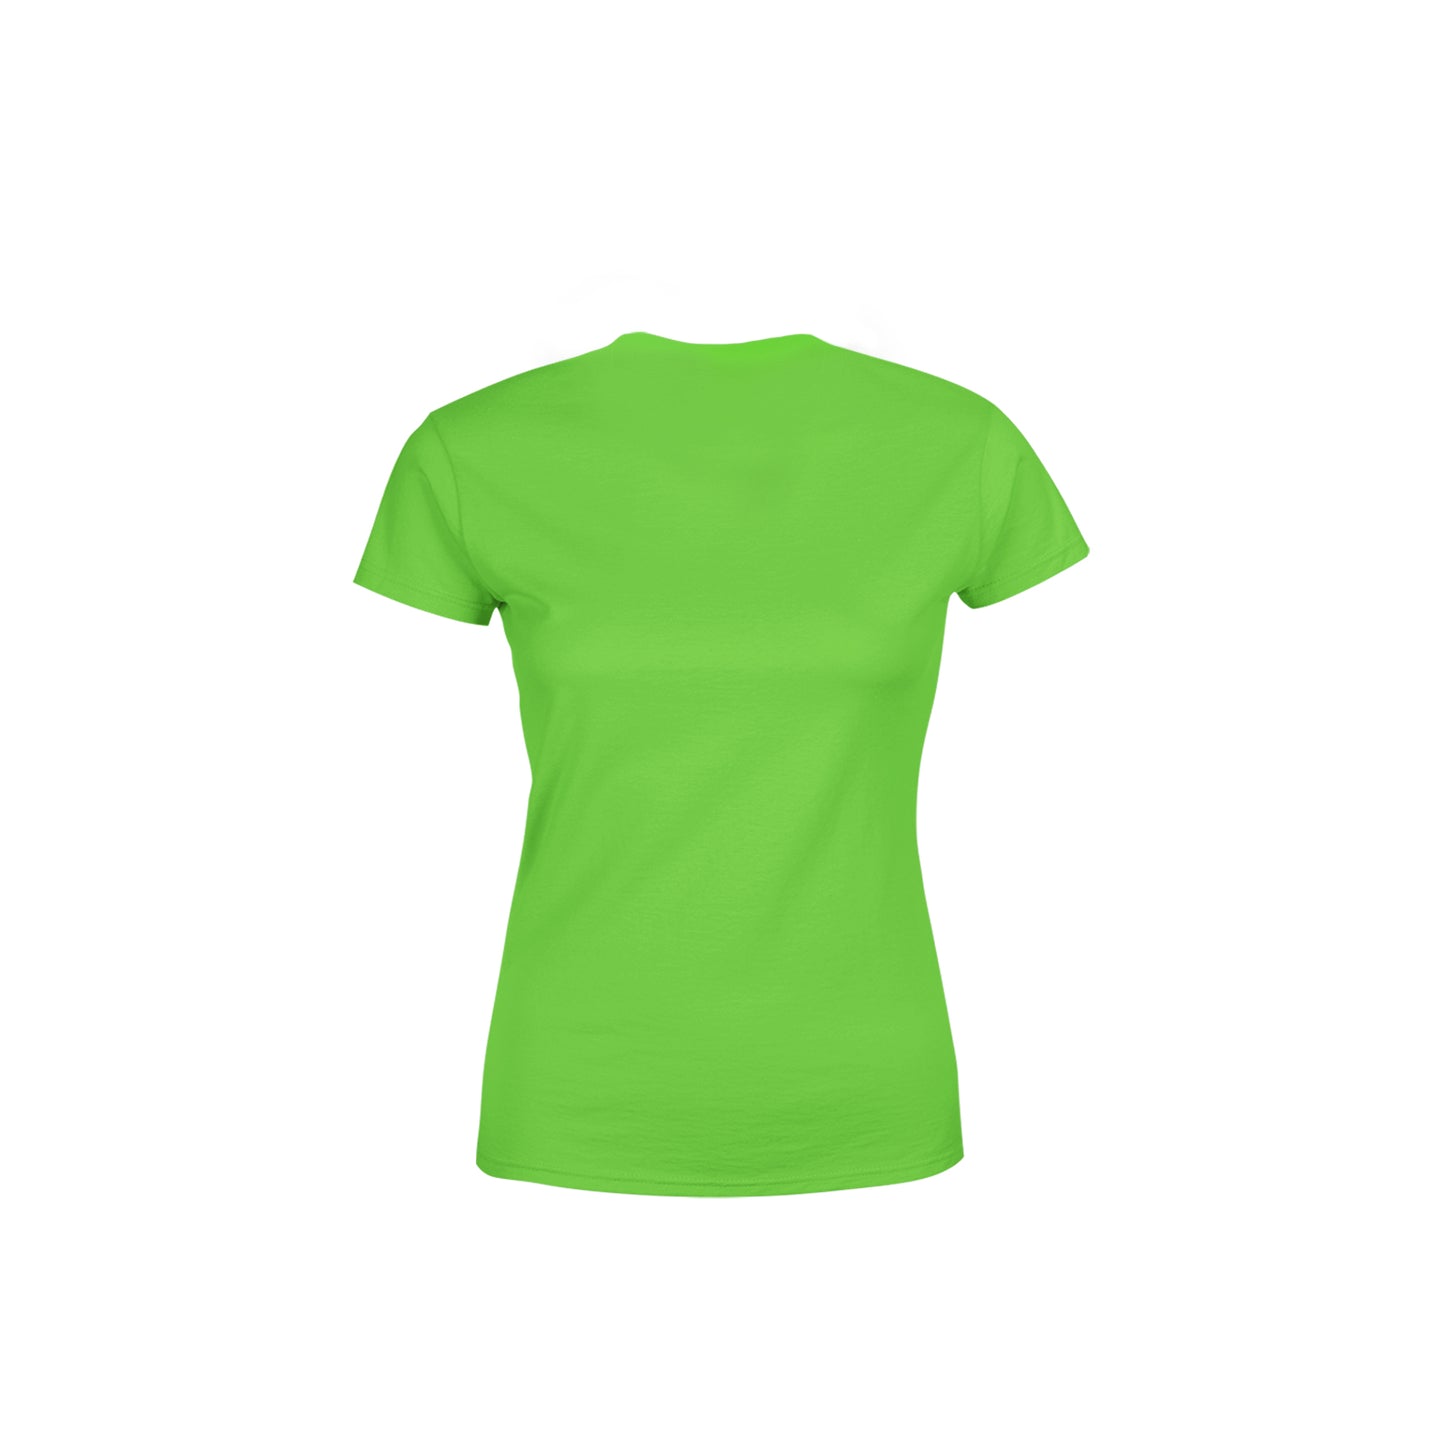 45 Number Women's T-Shirt (Liril Green)